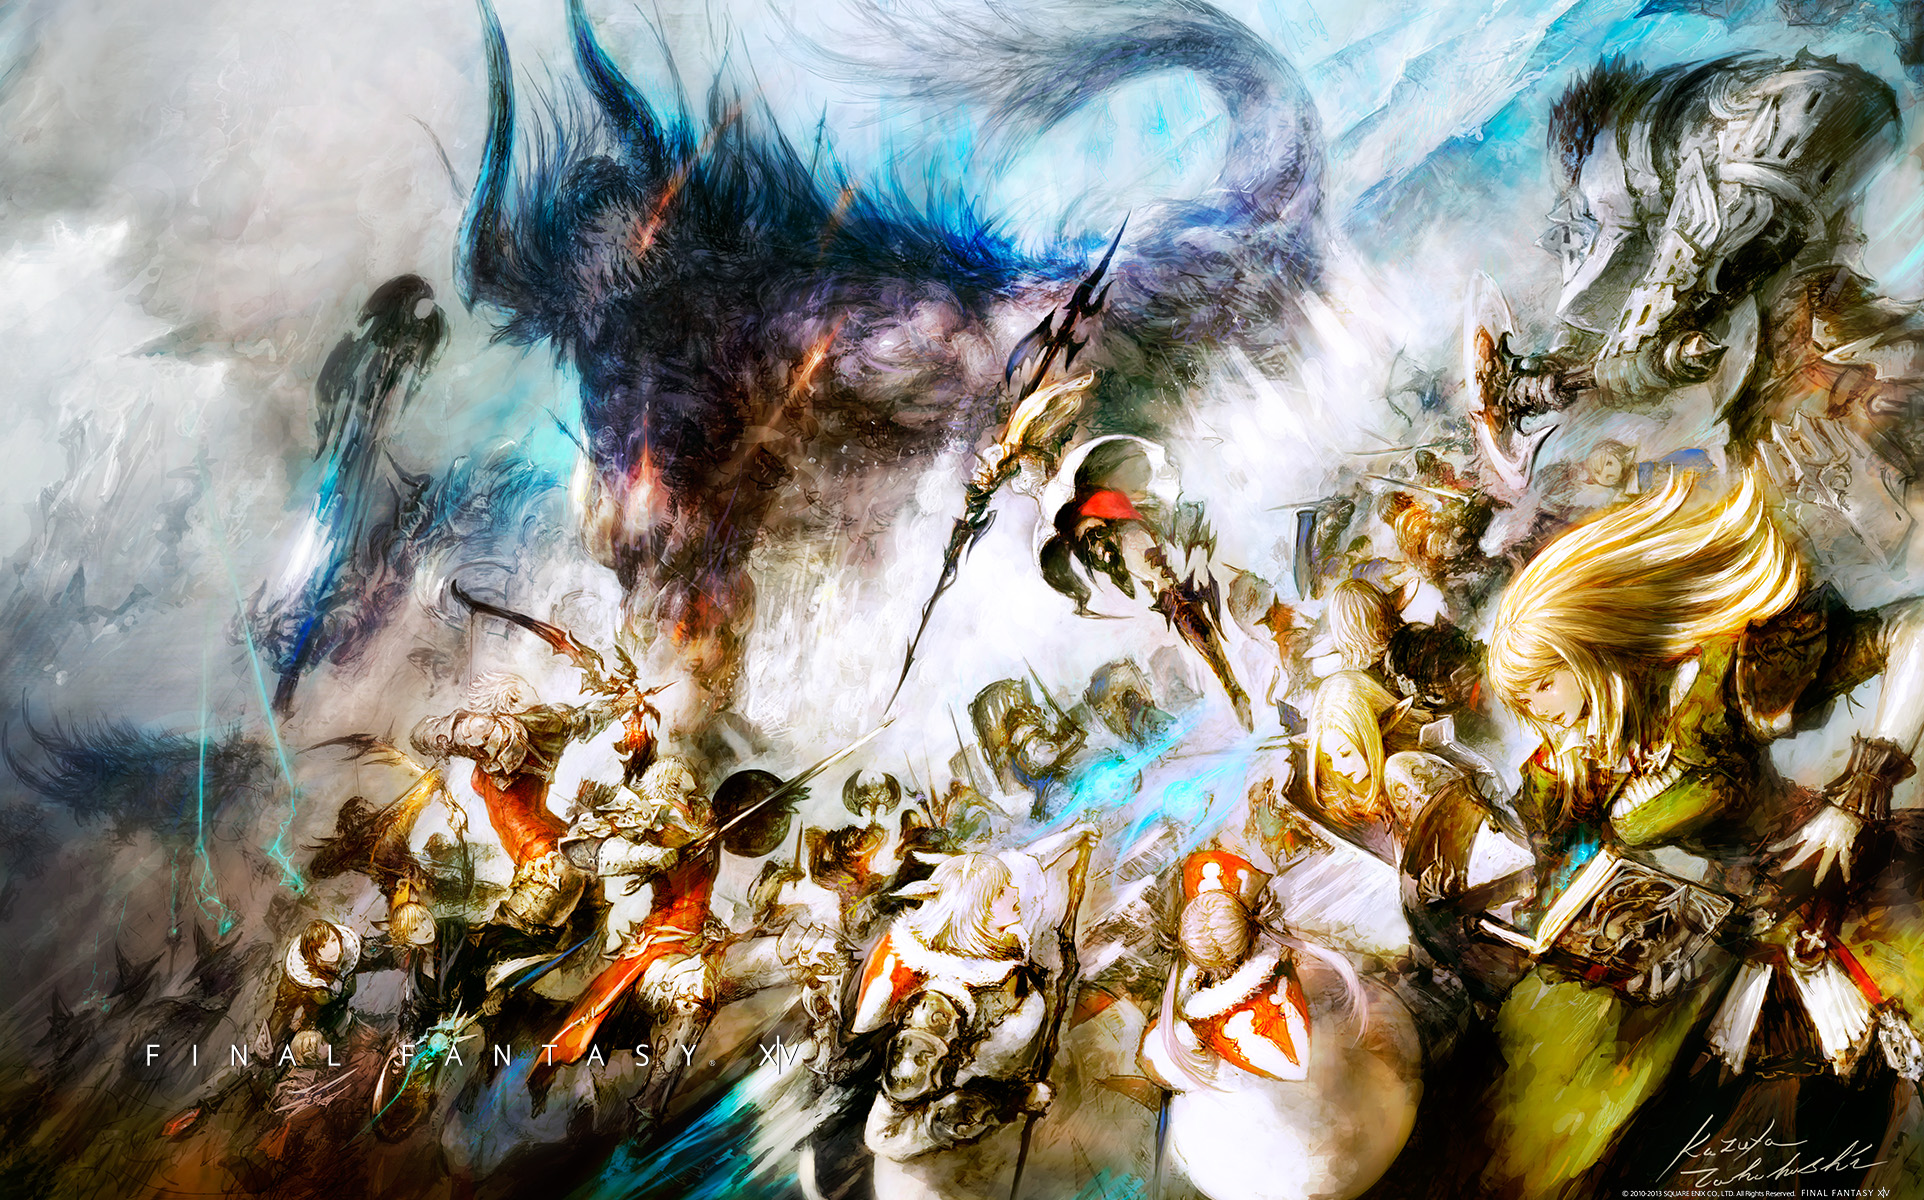 Final Fantasy XV HD Wallpapers Best Wallpapers FanDownload Free